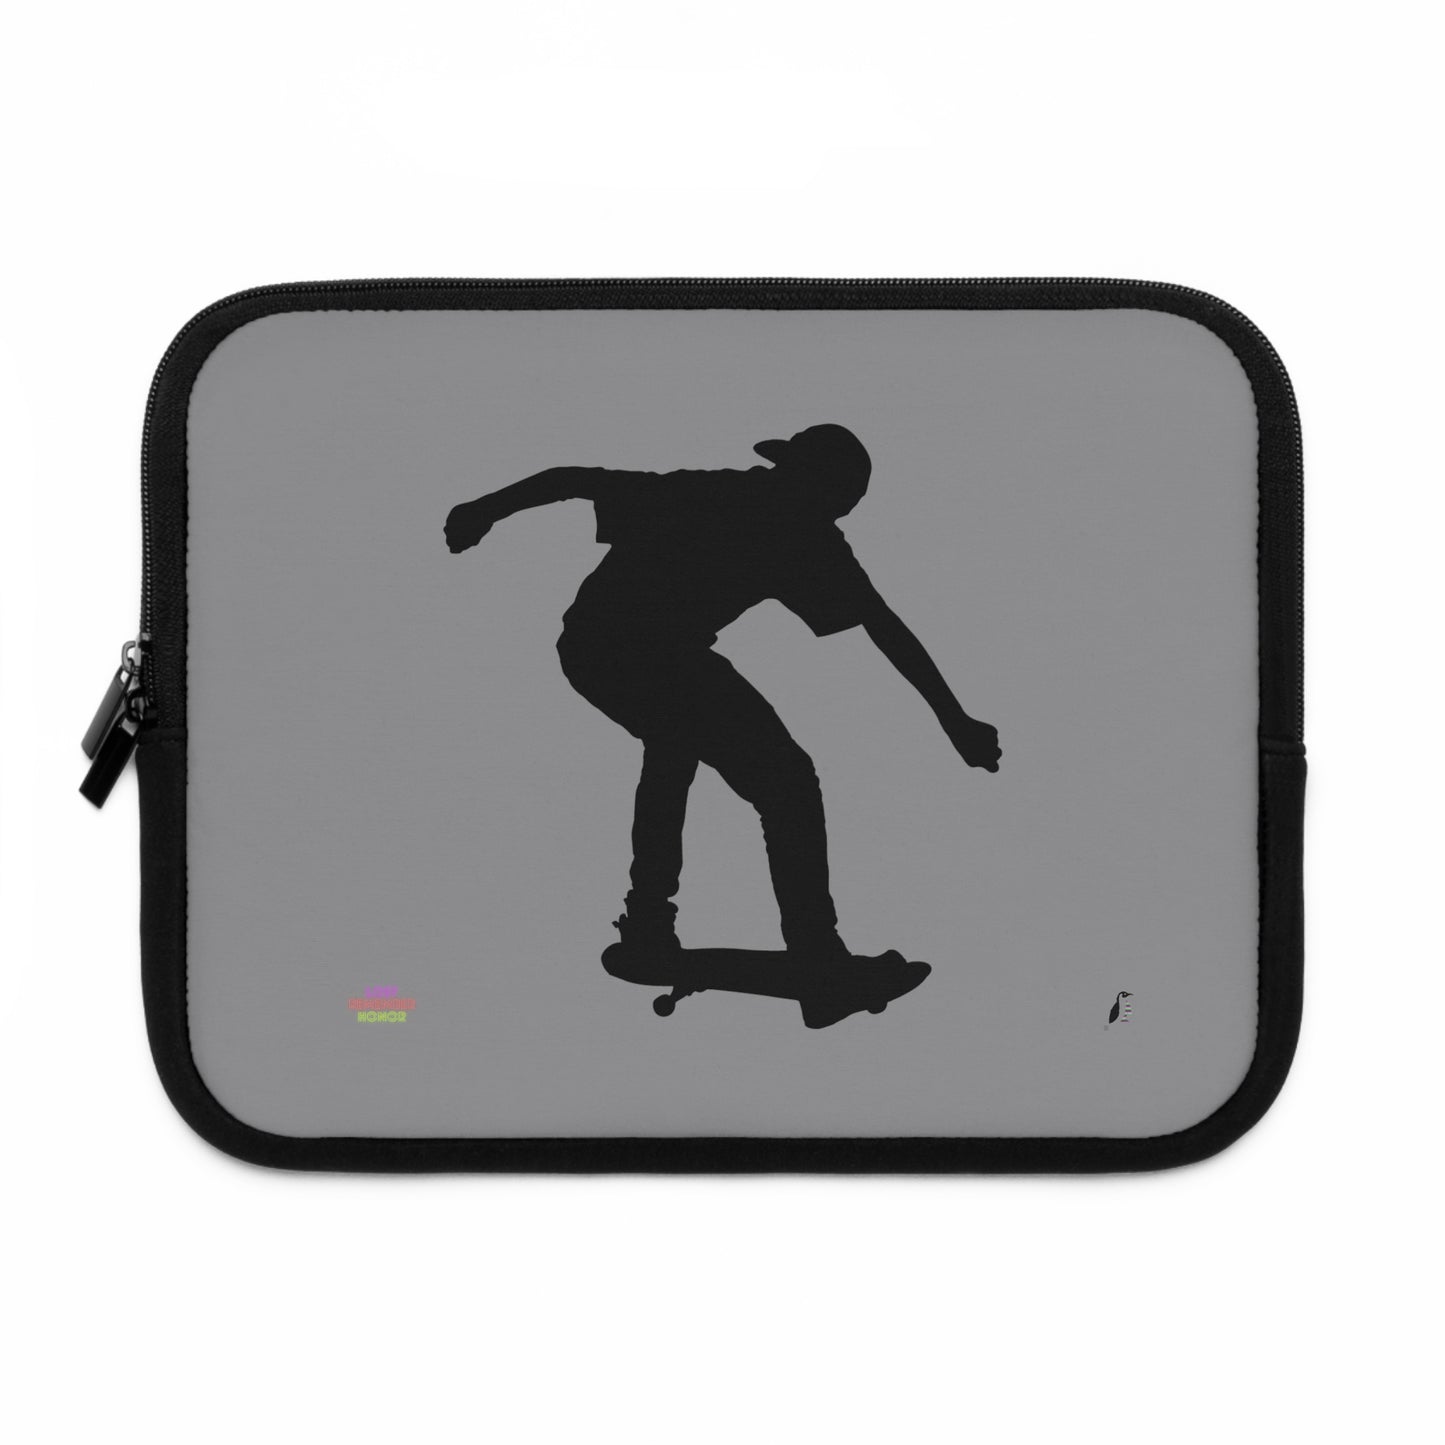 Laptop Sleeve: Skateboarding Grey